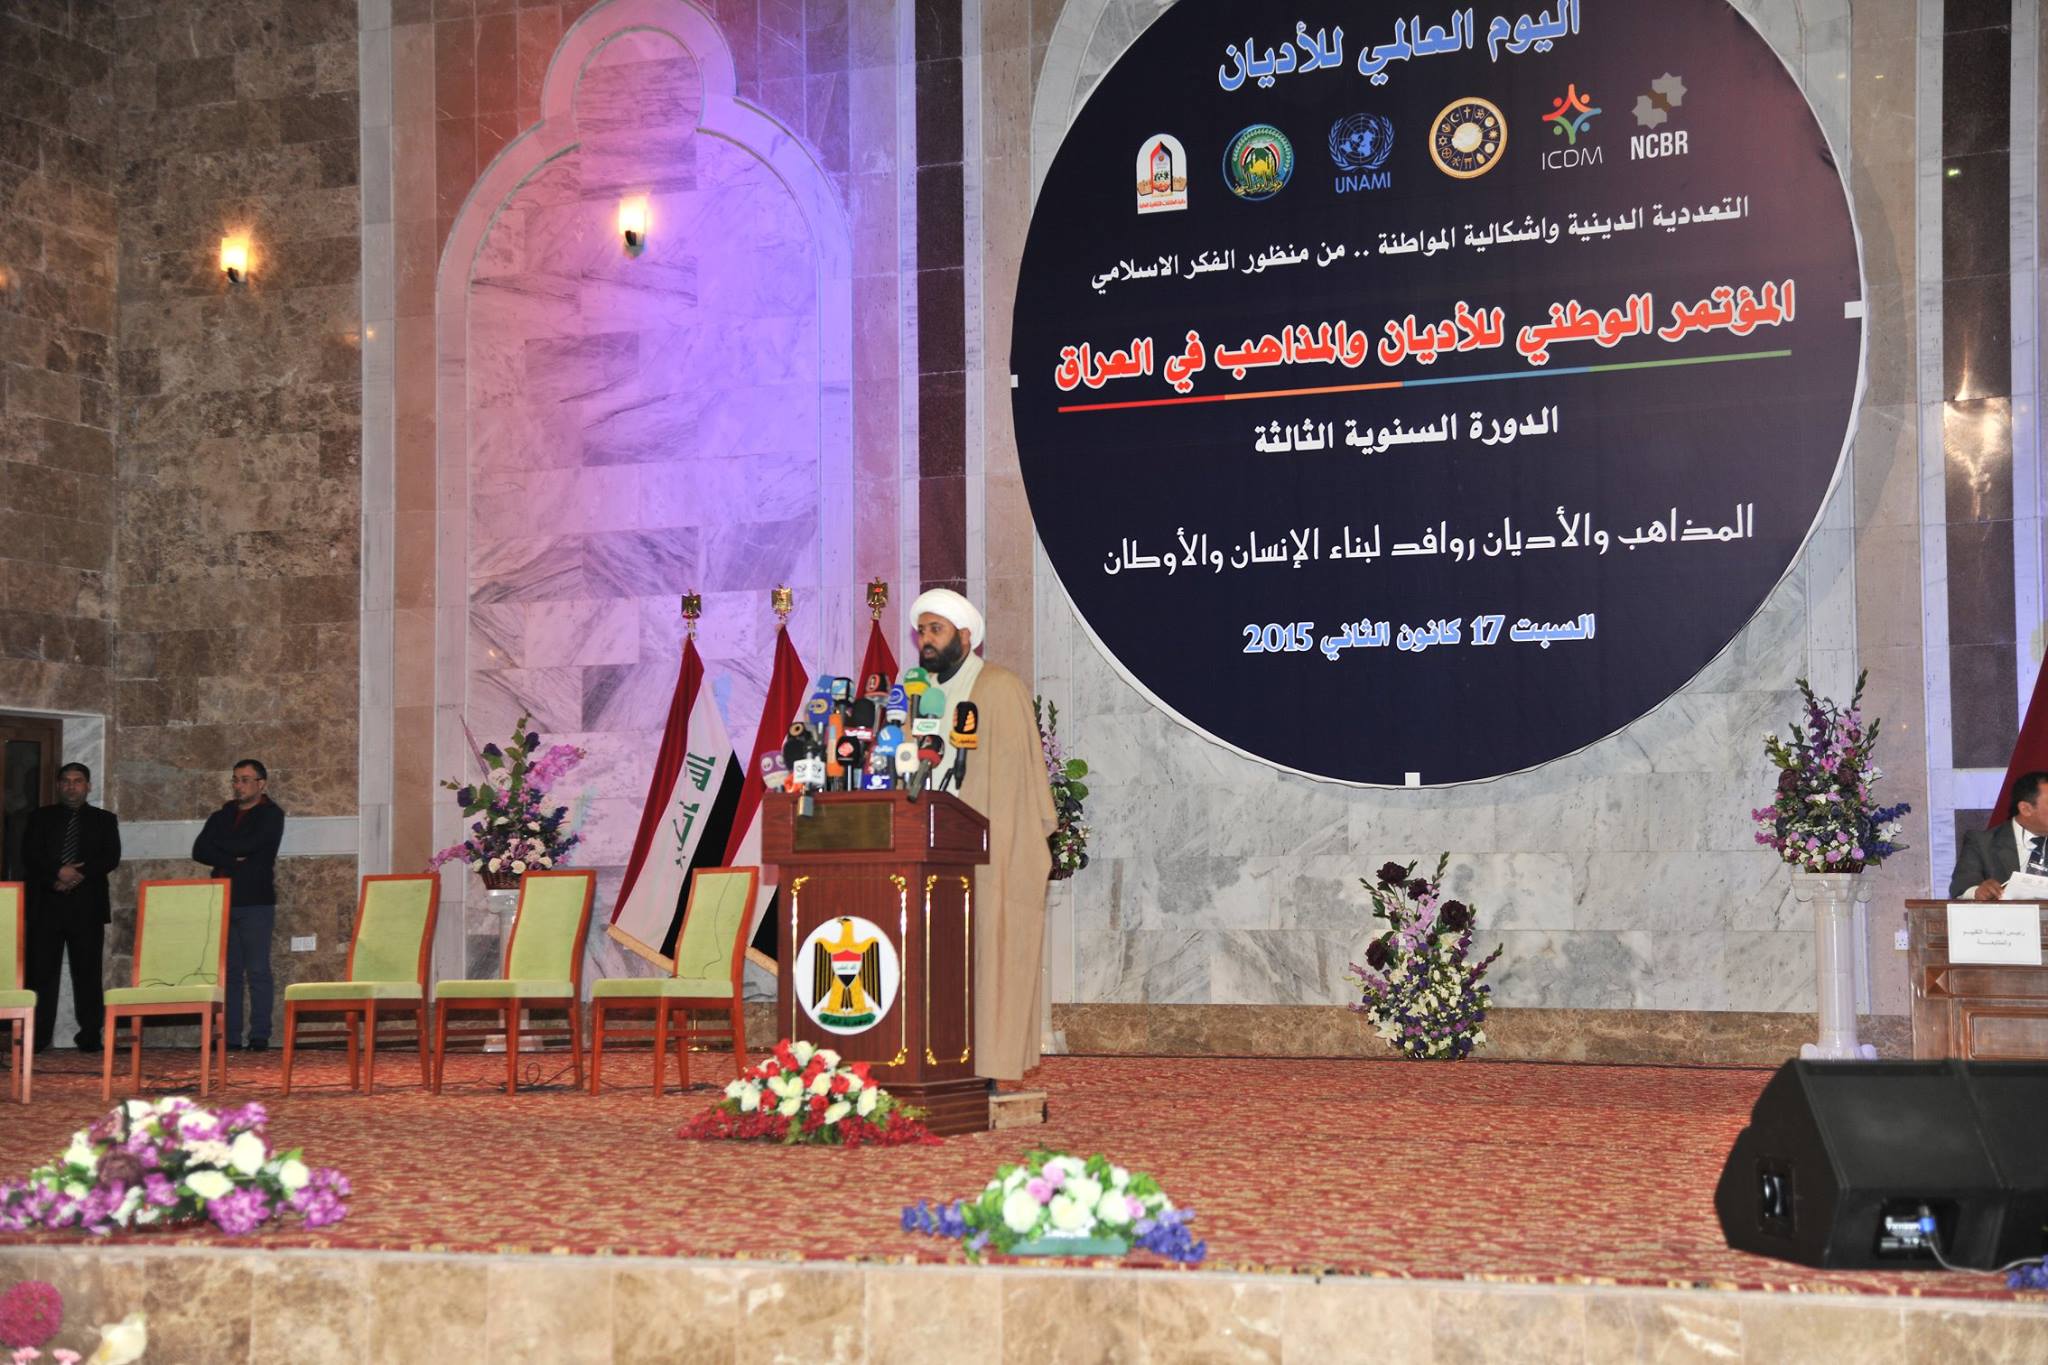 ديوان الوقف السني يحتضن المؤتمر الوطني للاديان والمذاهب في العراق بنسخته الثالثة (1)